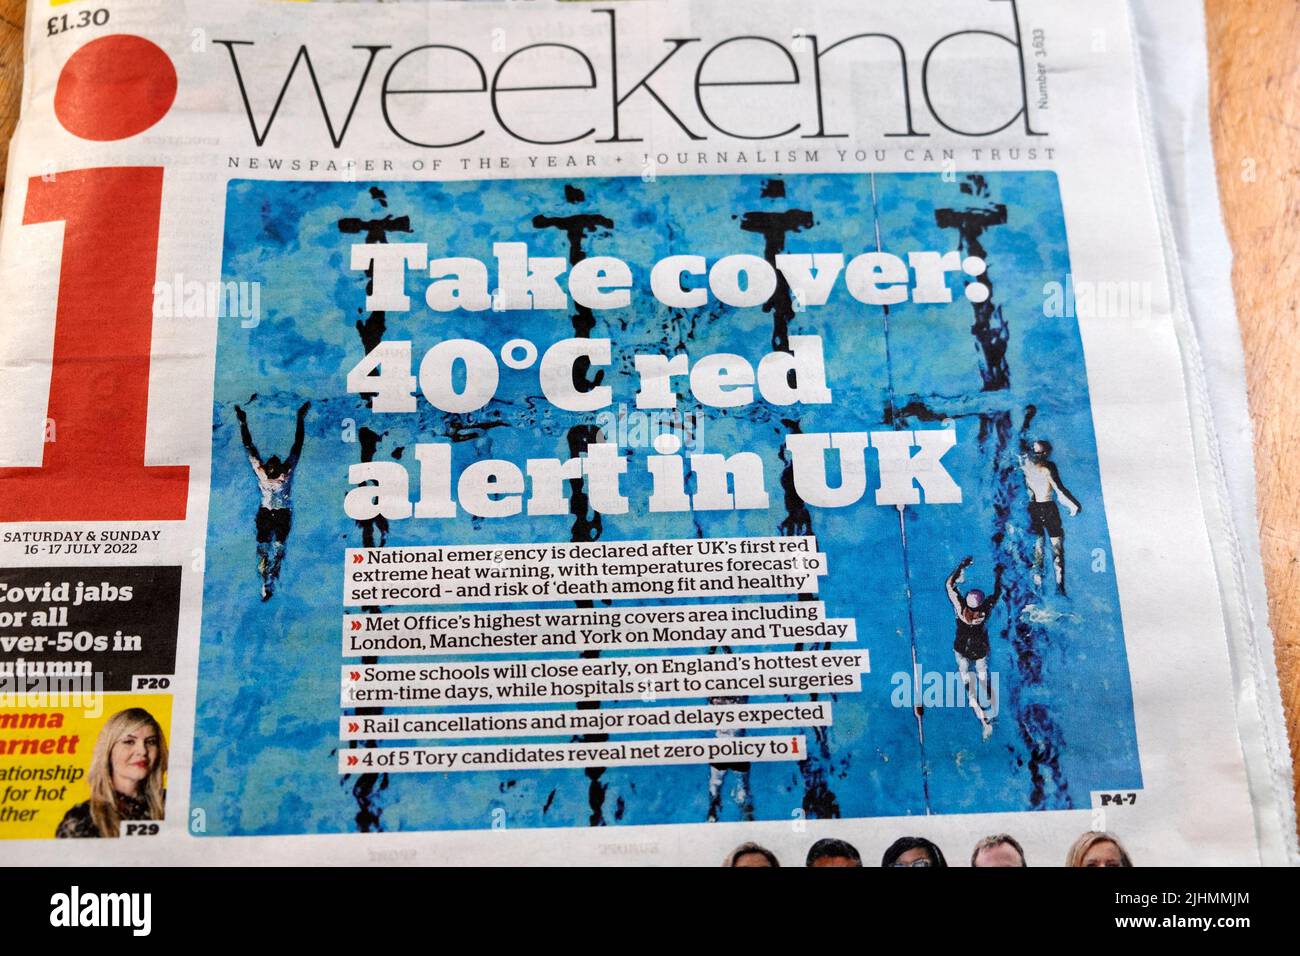 Advertencia de la ola de calor portada i Fin de semana titular del periódico 'Take cover: 40°C red alert in UK' el 17 de julio de 2022 Londres Inglaterra Reino Unido Gran Bretaña Foto de stock